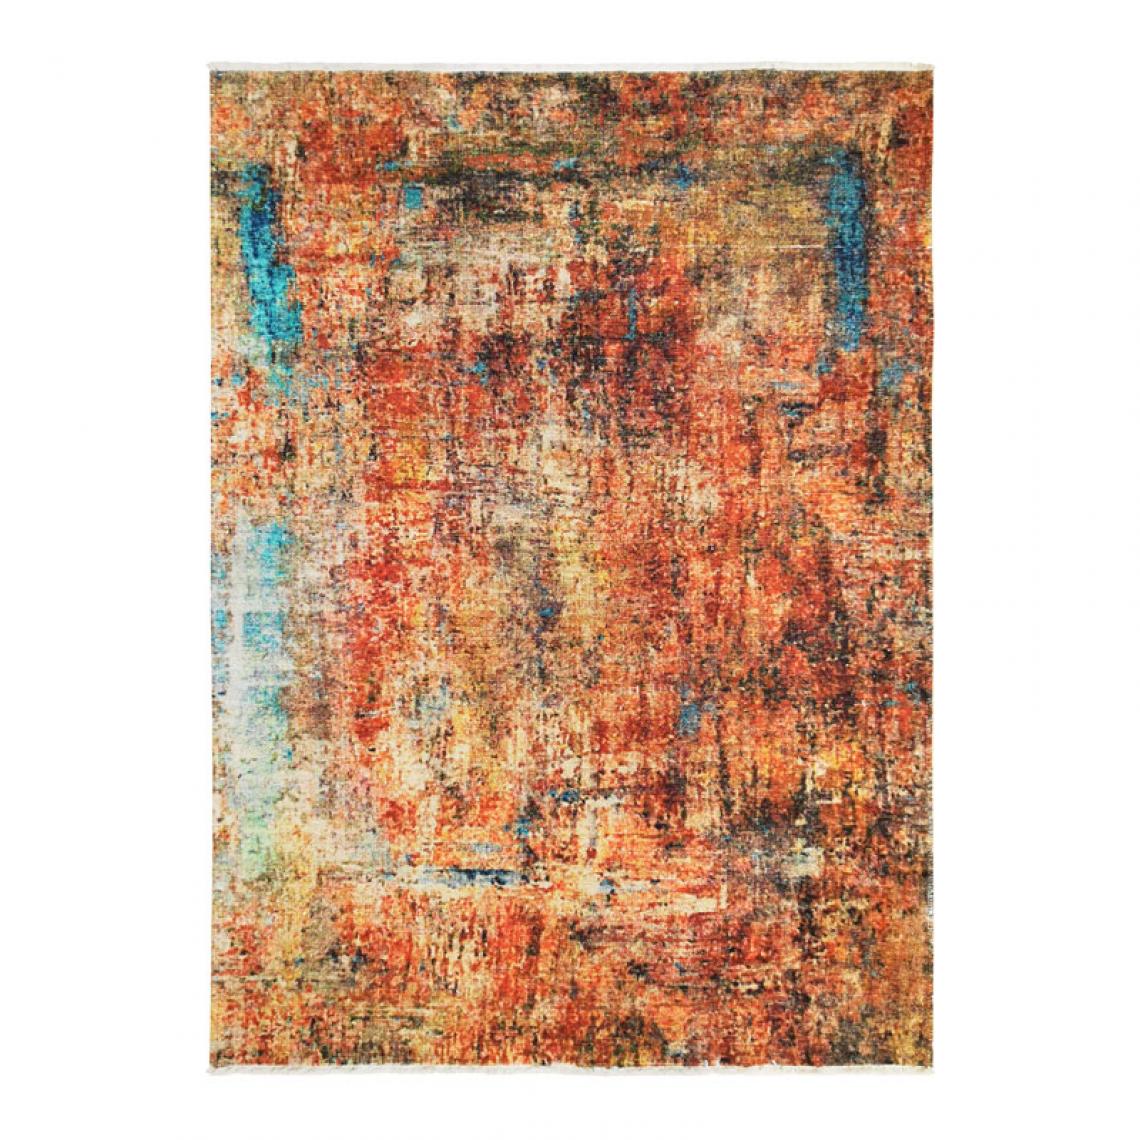 Thedecofactory - IMPRESSION ART - Tapis extra-doux effet peinture orange 160x230 - Tapis